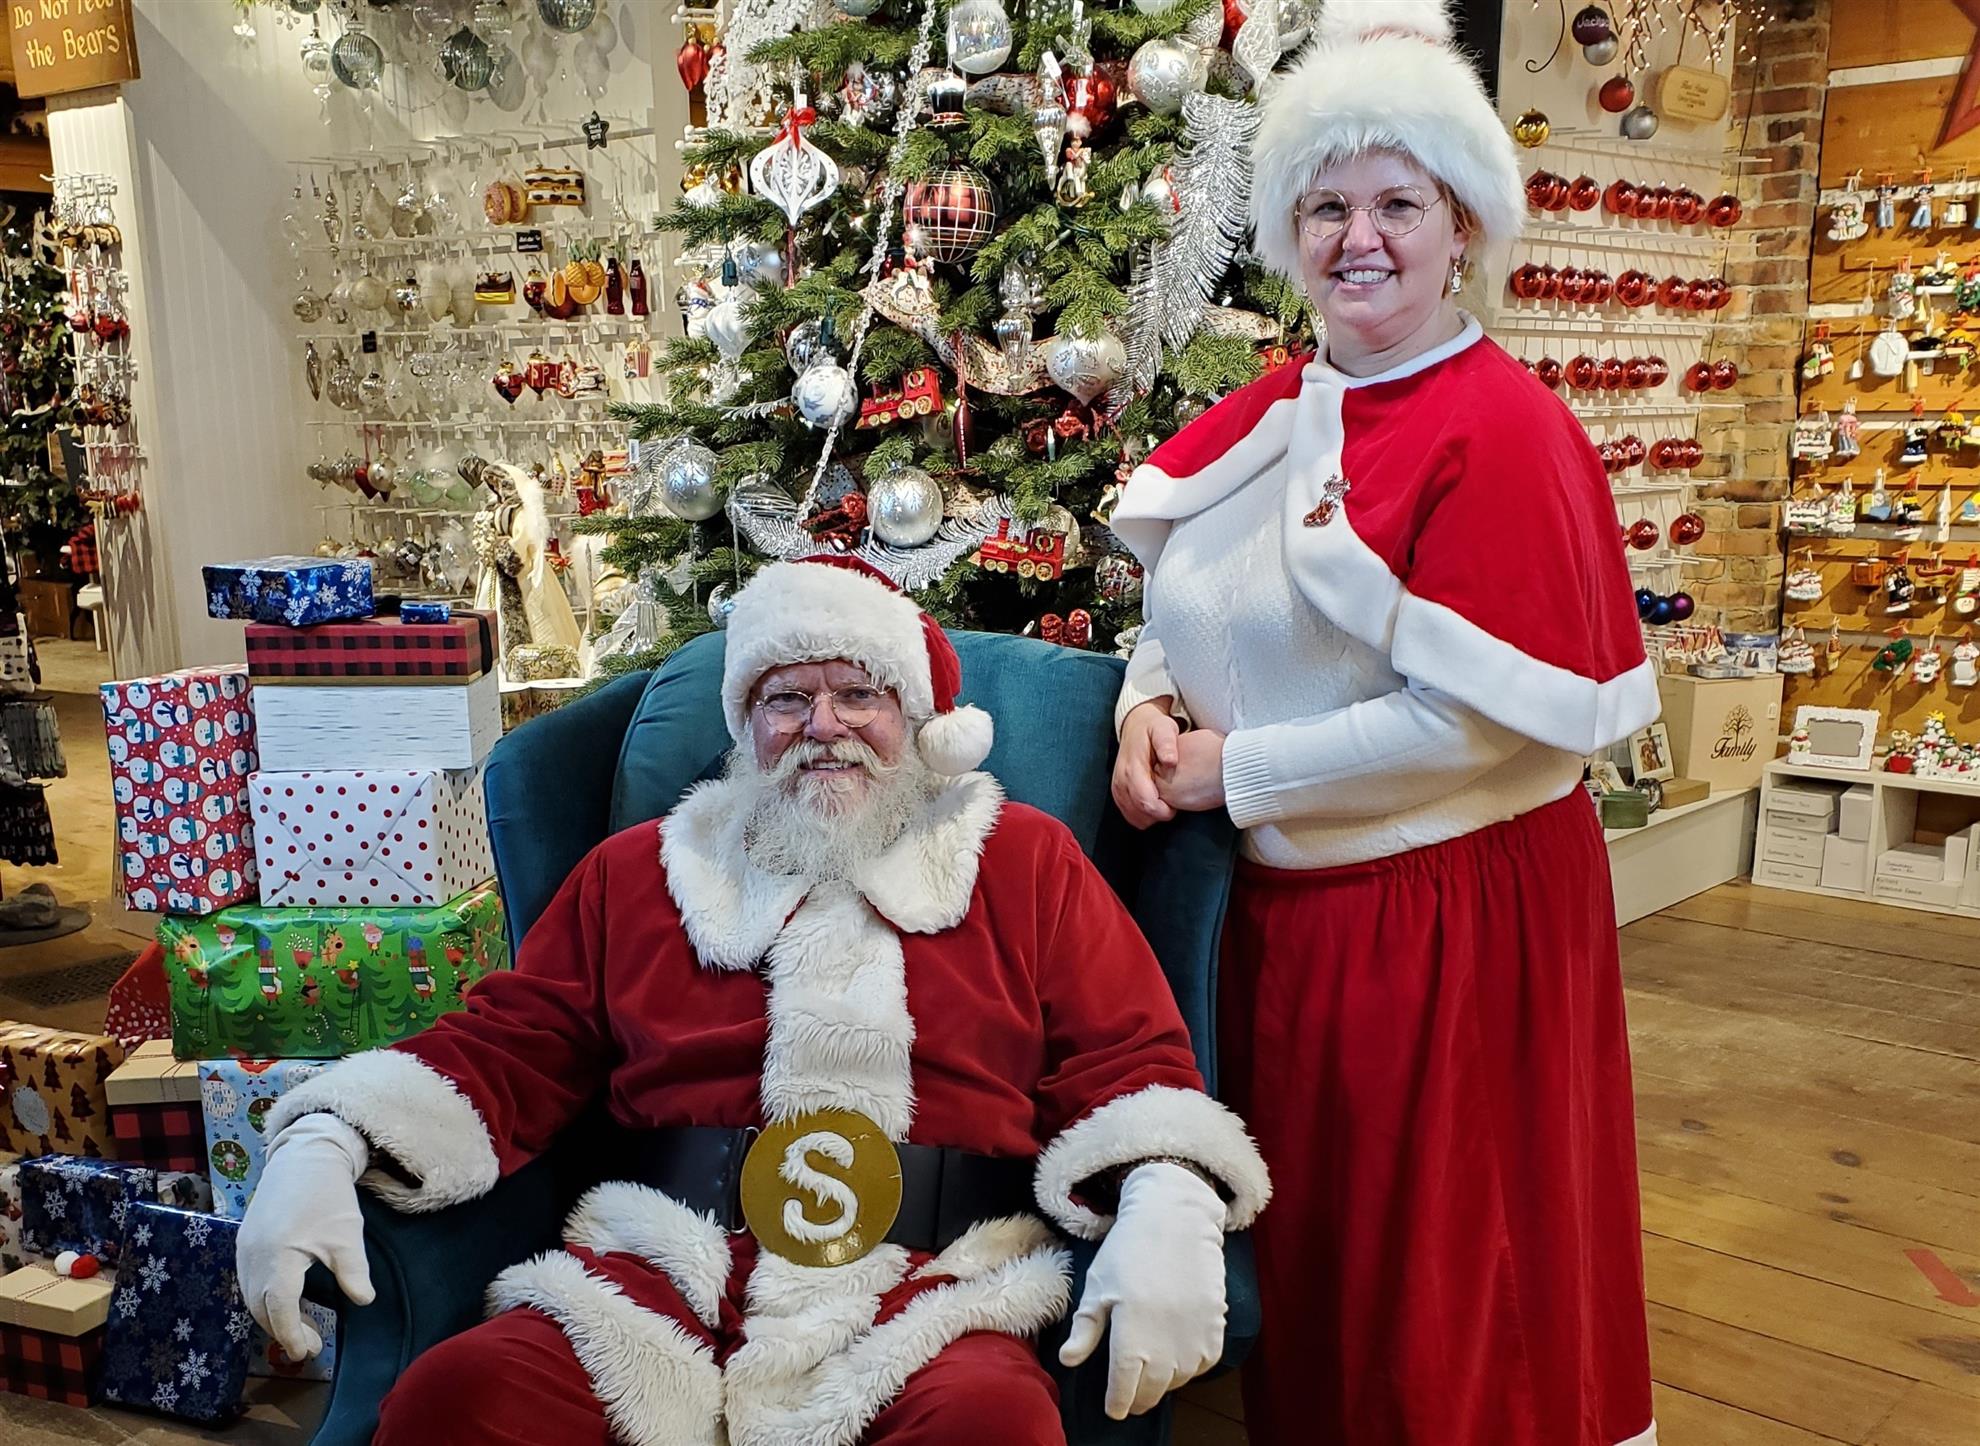 Santa and Mrs. Claus at Christmas Tyme.